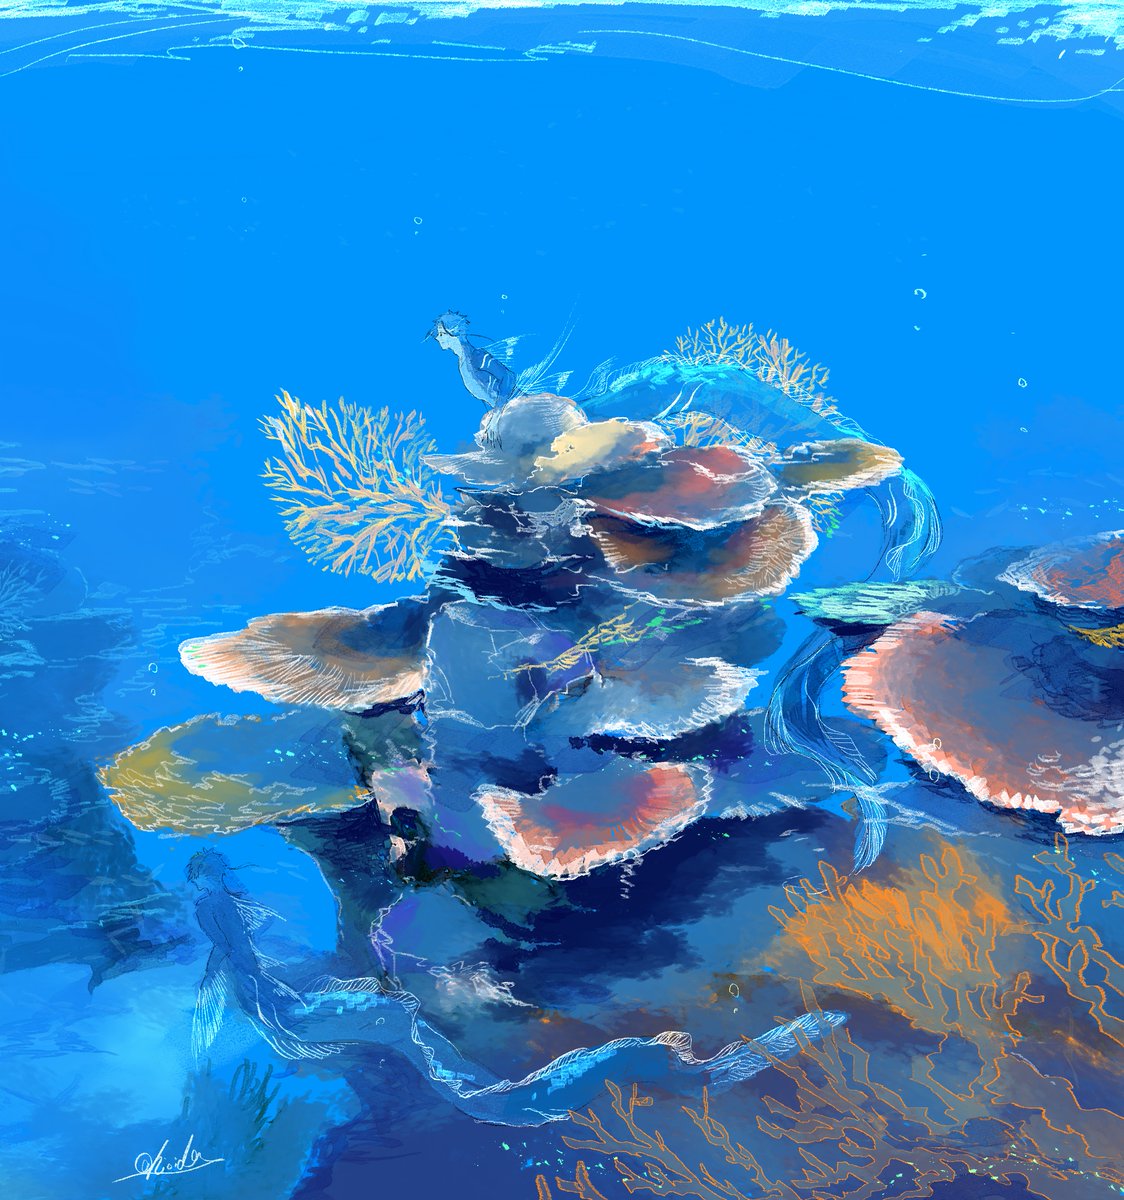 「珊瑚礁?? 」|智弥のイラスト